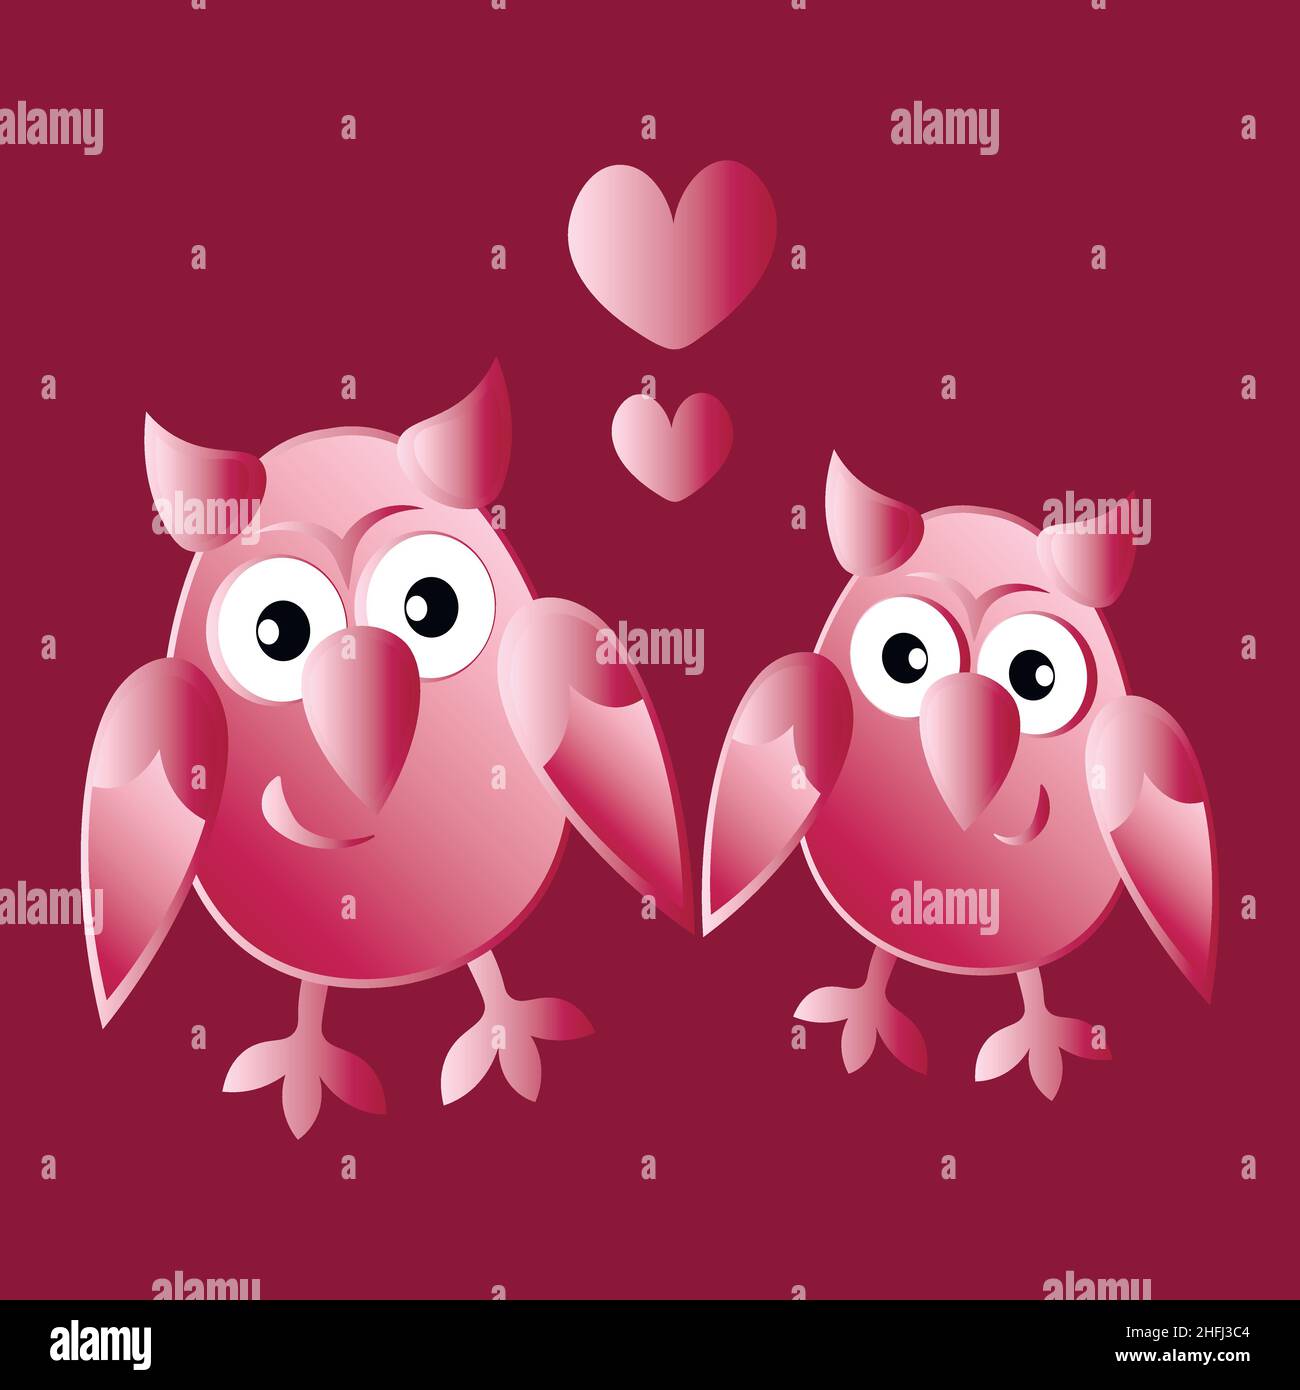 Illustrazione su sfondo quadrato - due gufi innamorati del cuore. Uccelli cartoni animati. Pastiche. Disegno figli. Elemento di design di libri, taccuini, cartoline, articoli per interni Illustrazione Vettoriale